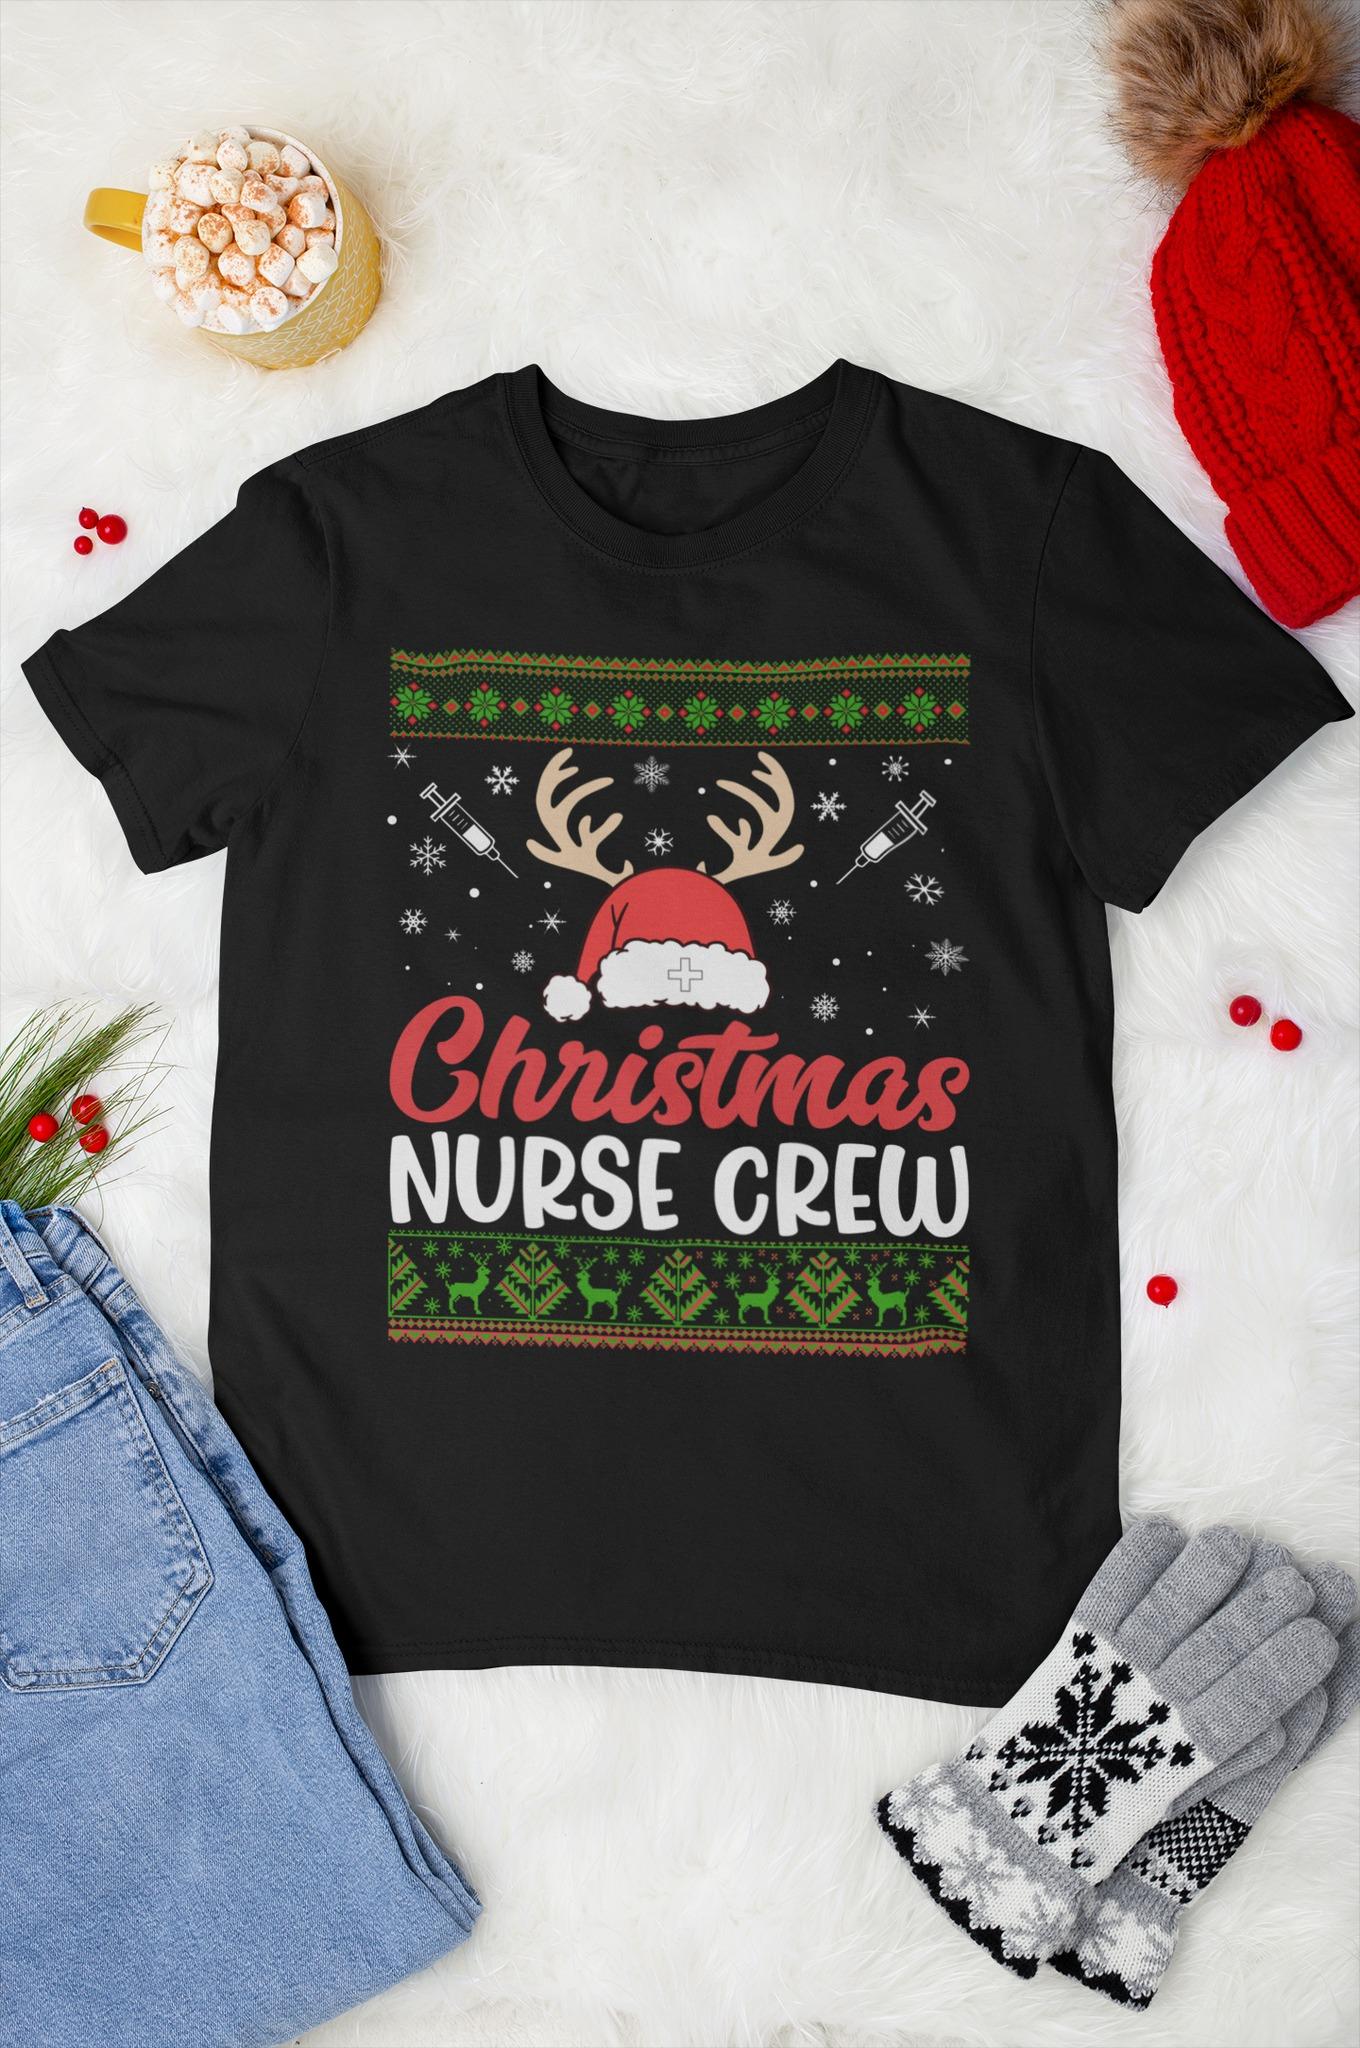 Santa Nurse Christmas Ugly Sweater - Christmas nurse crew